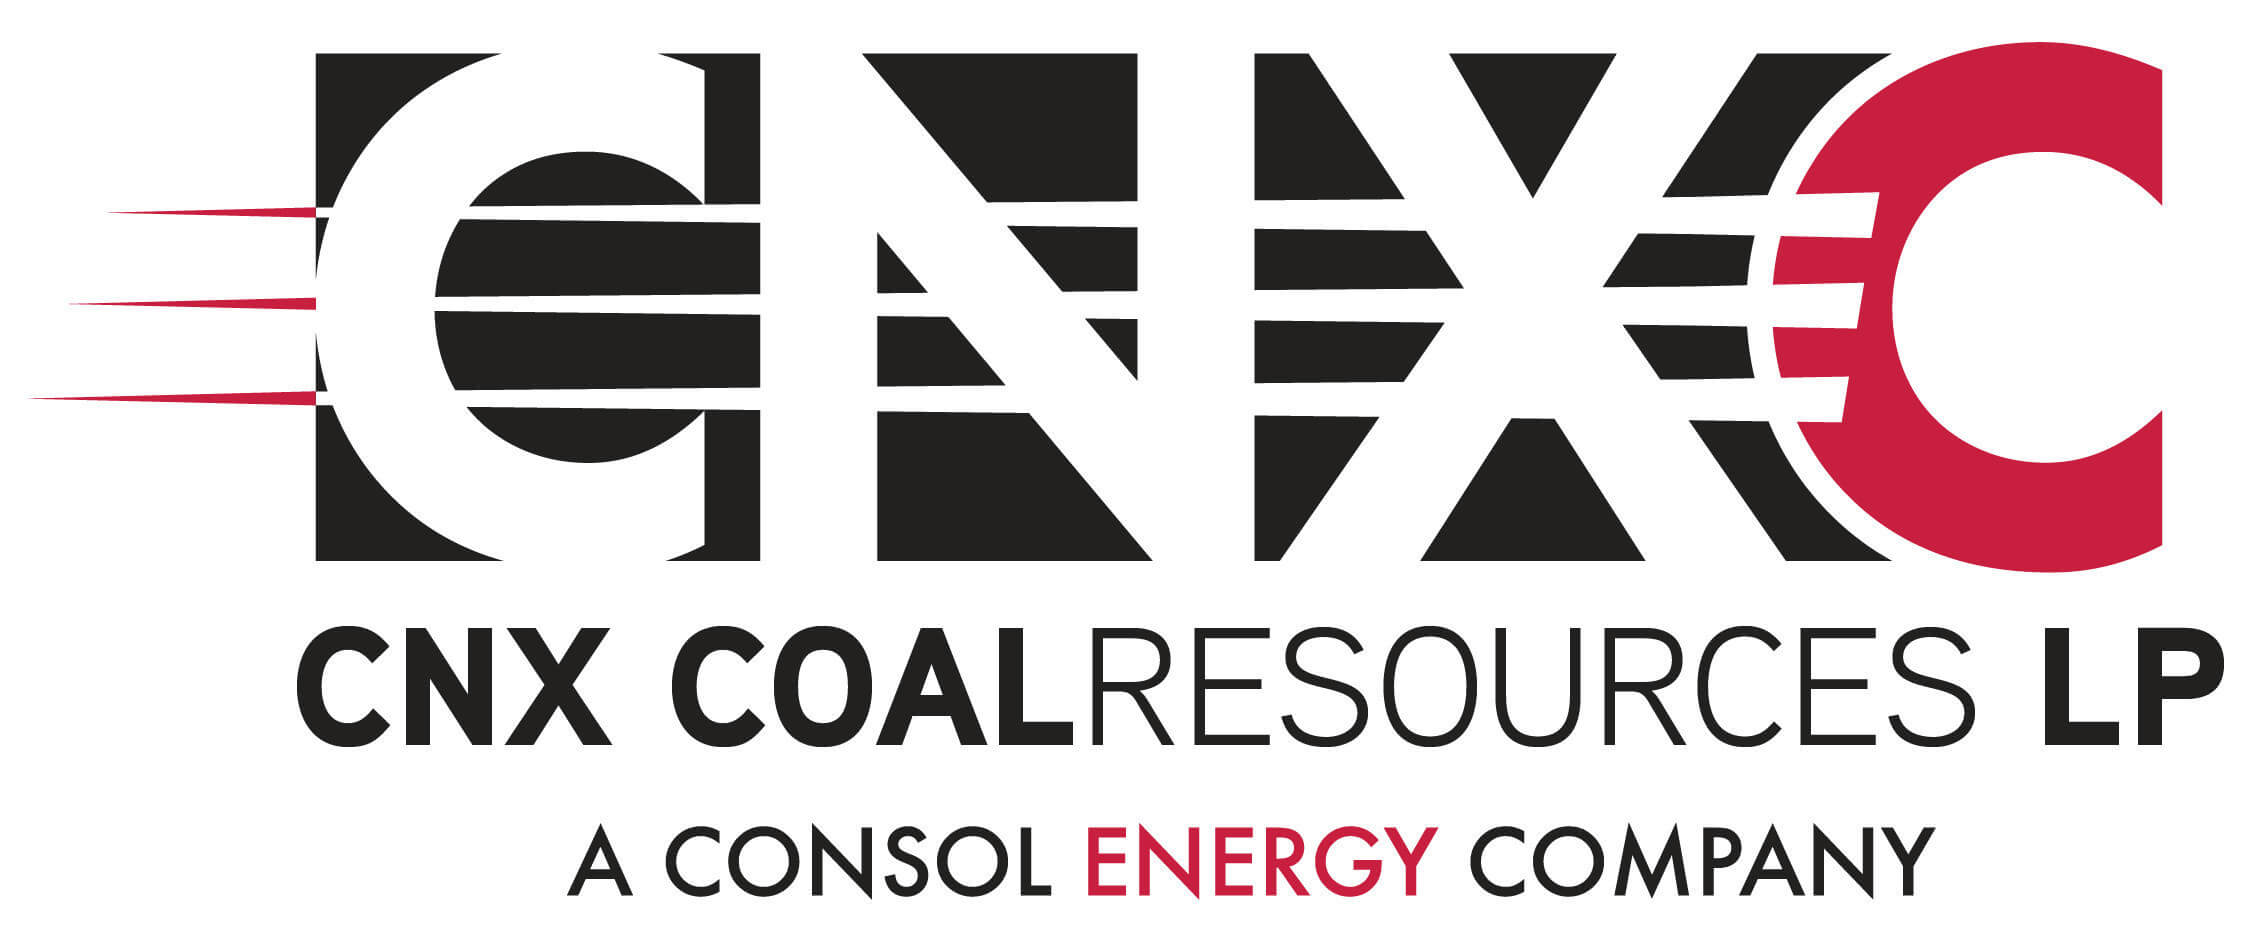 CNX Logo - CNX Coal Resources LP Logo - Stock Market Daily